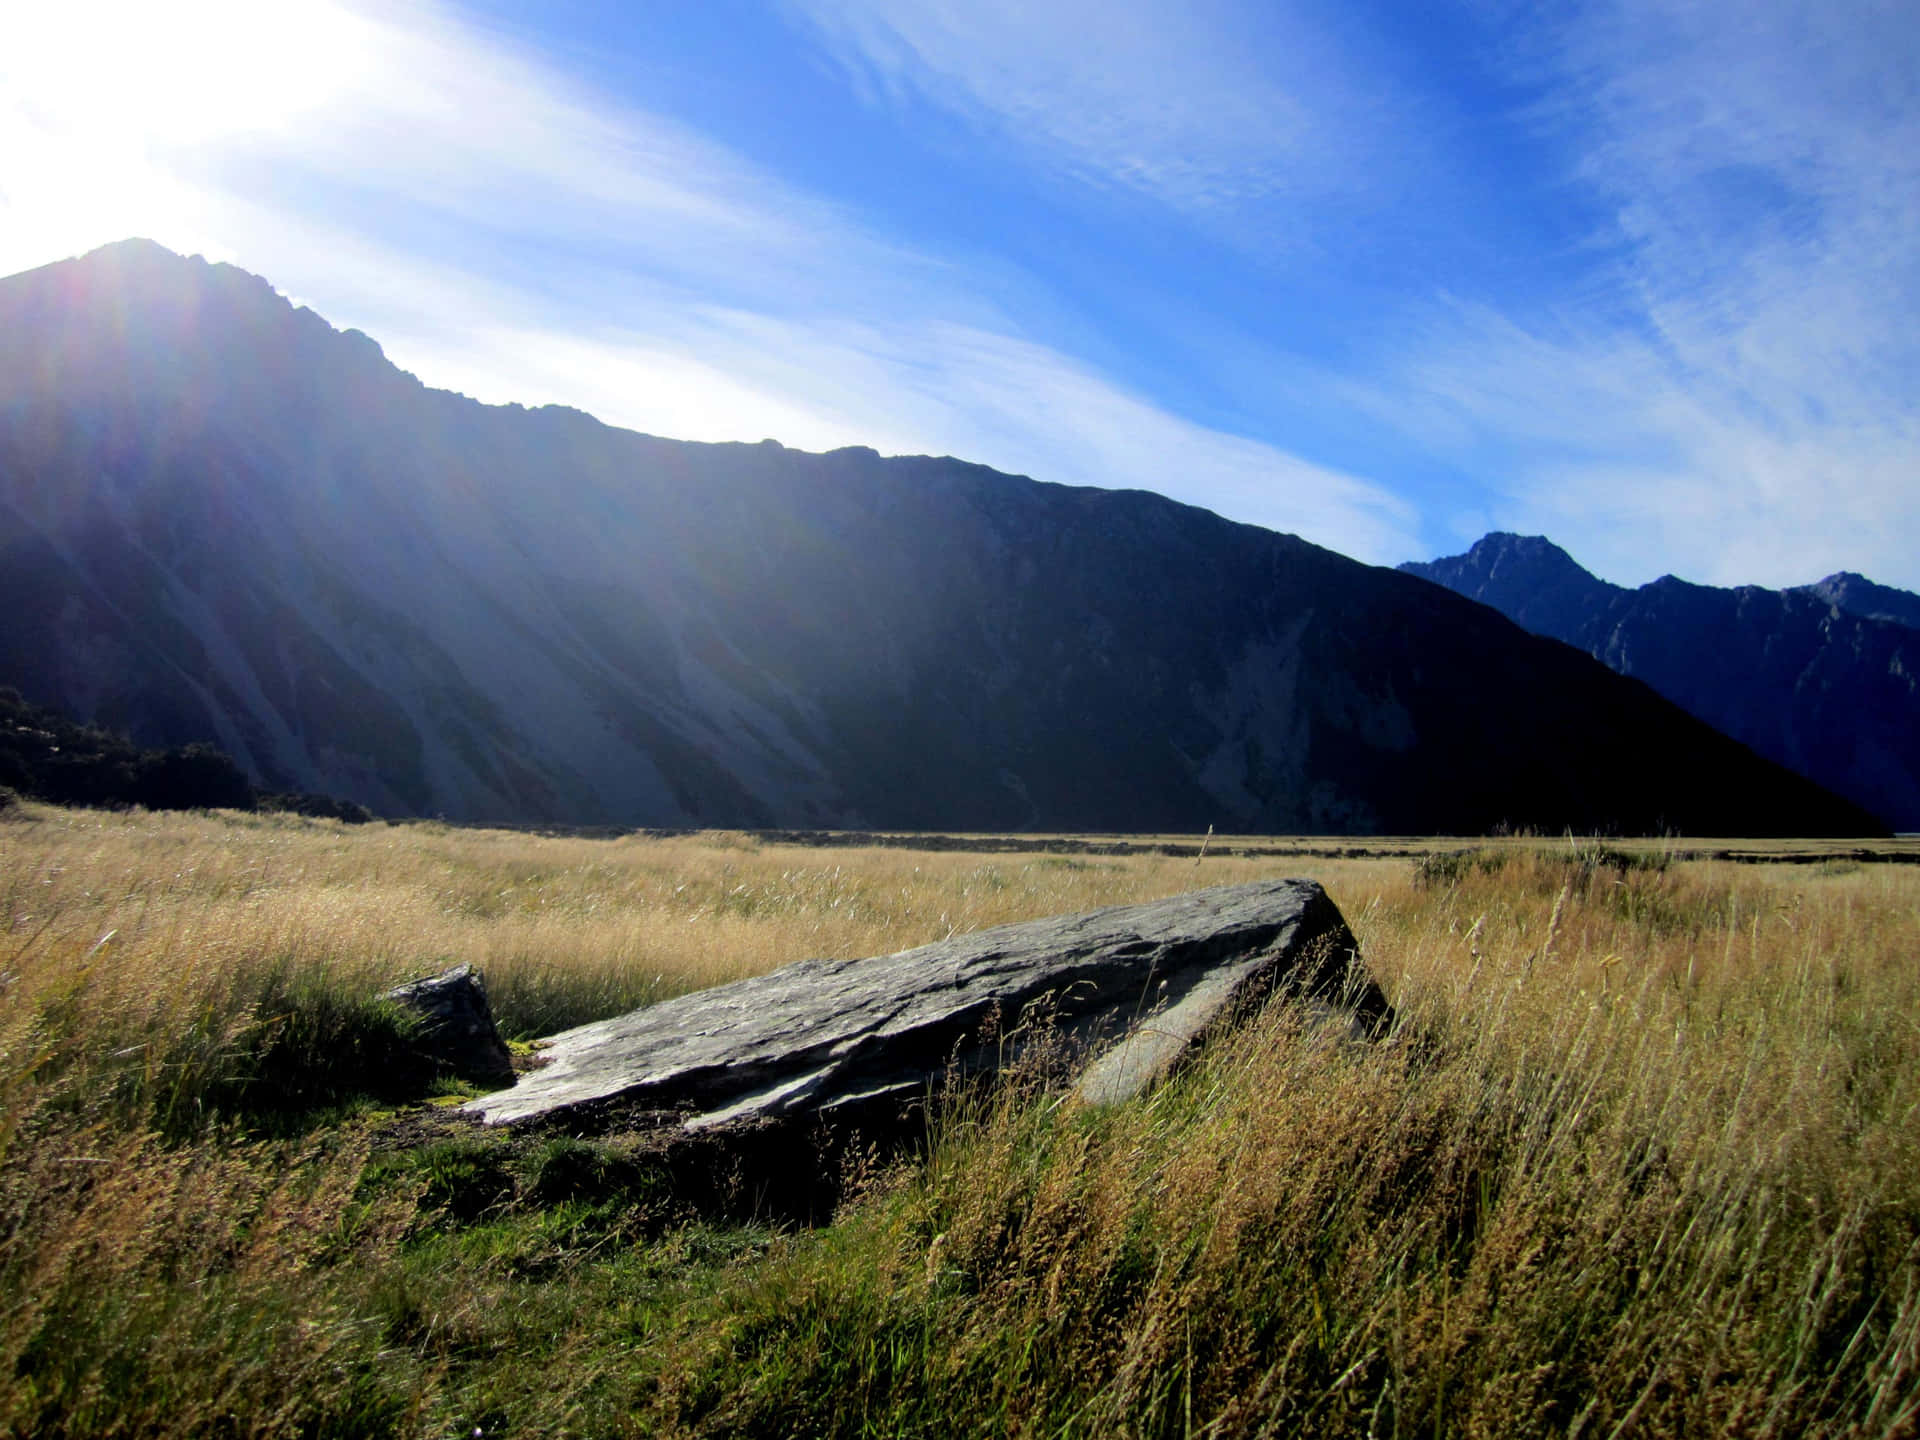 Fotoaérea Da Nova Zelândia Mostrando Montanhas Acidentadas E Encostas Verdejantes.